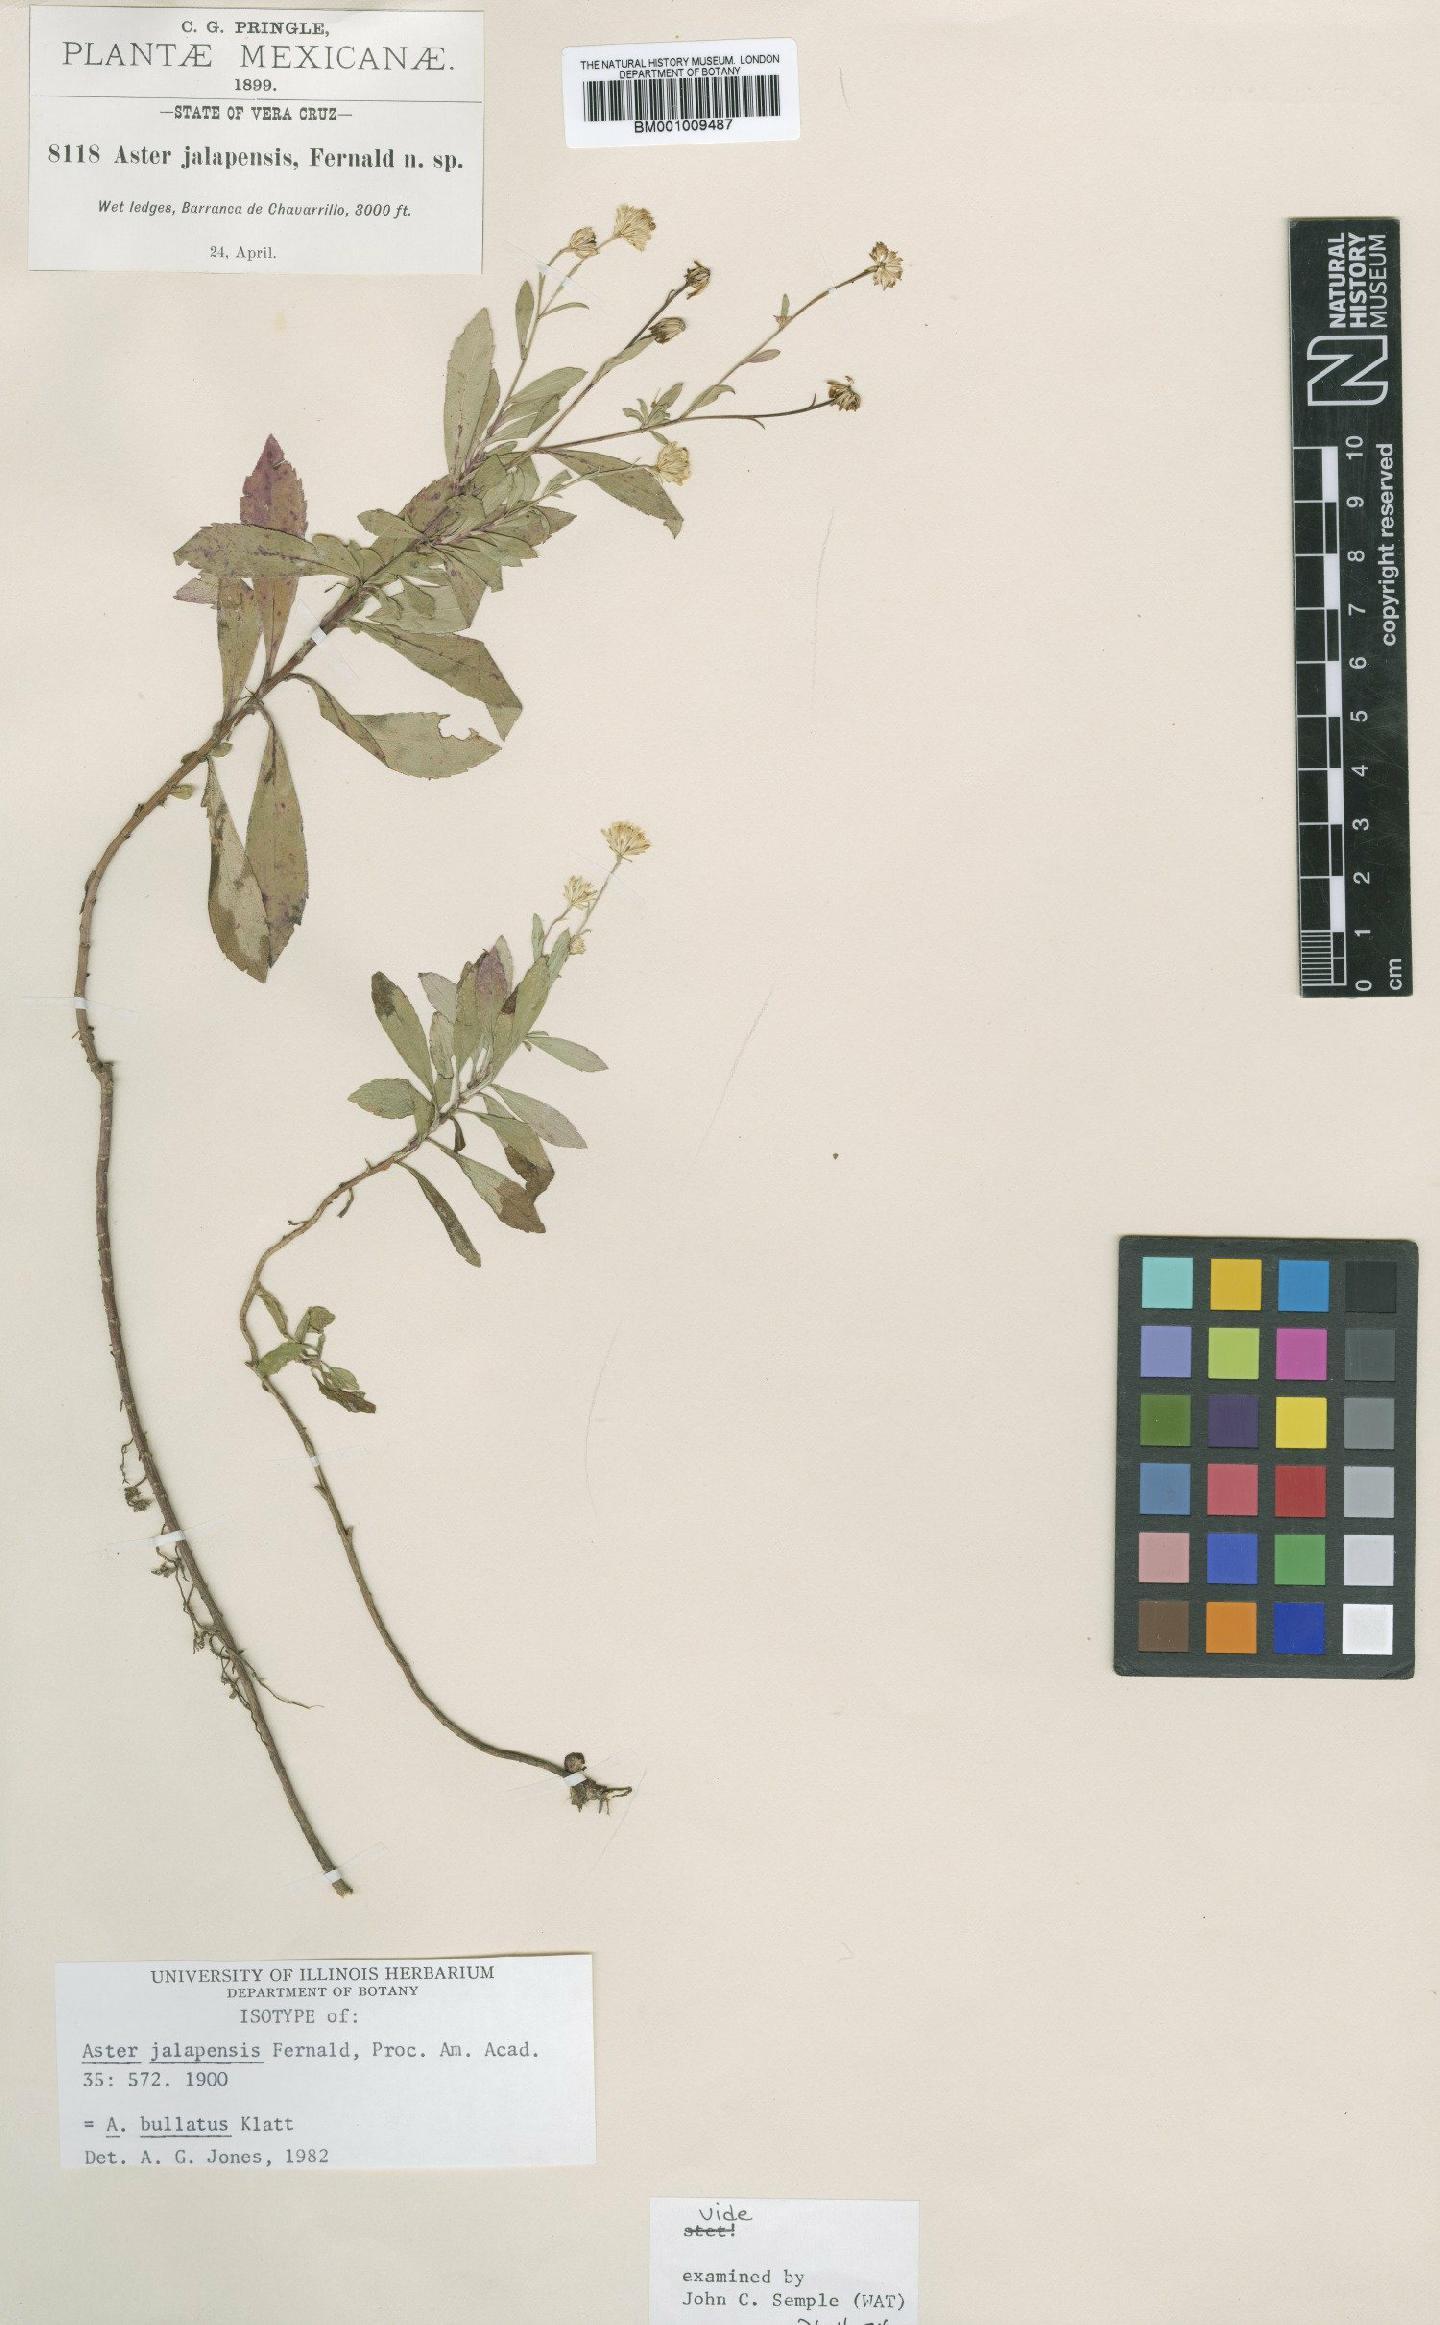 To NHMUK collection (Aster bullatus Klatt; Isotype; NHMUK:ecatalogue:611204)